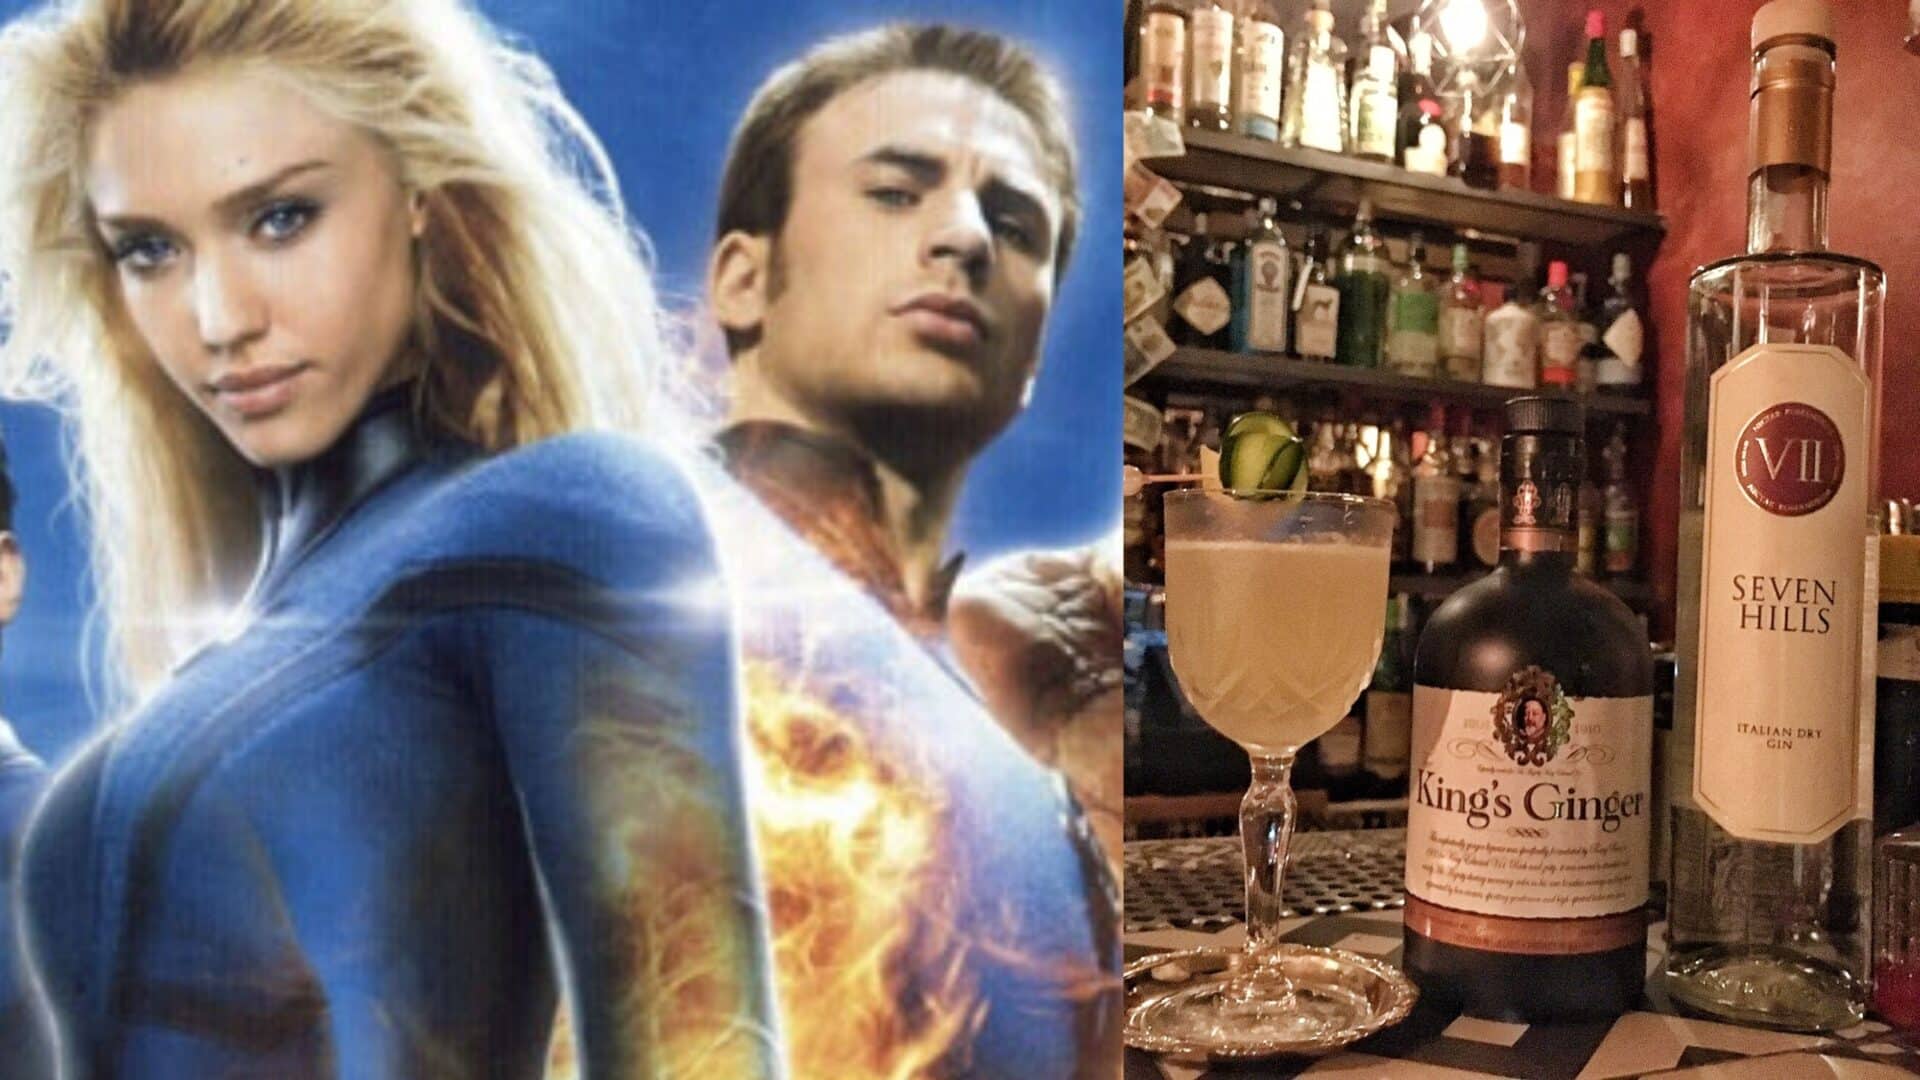 I Fantastici 4: l’eroico drink ispirato al film, il Ginger Hills